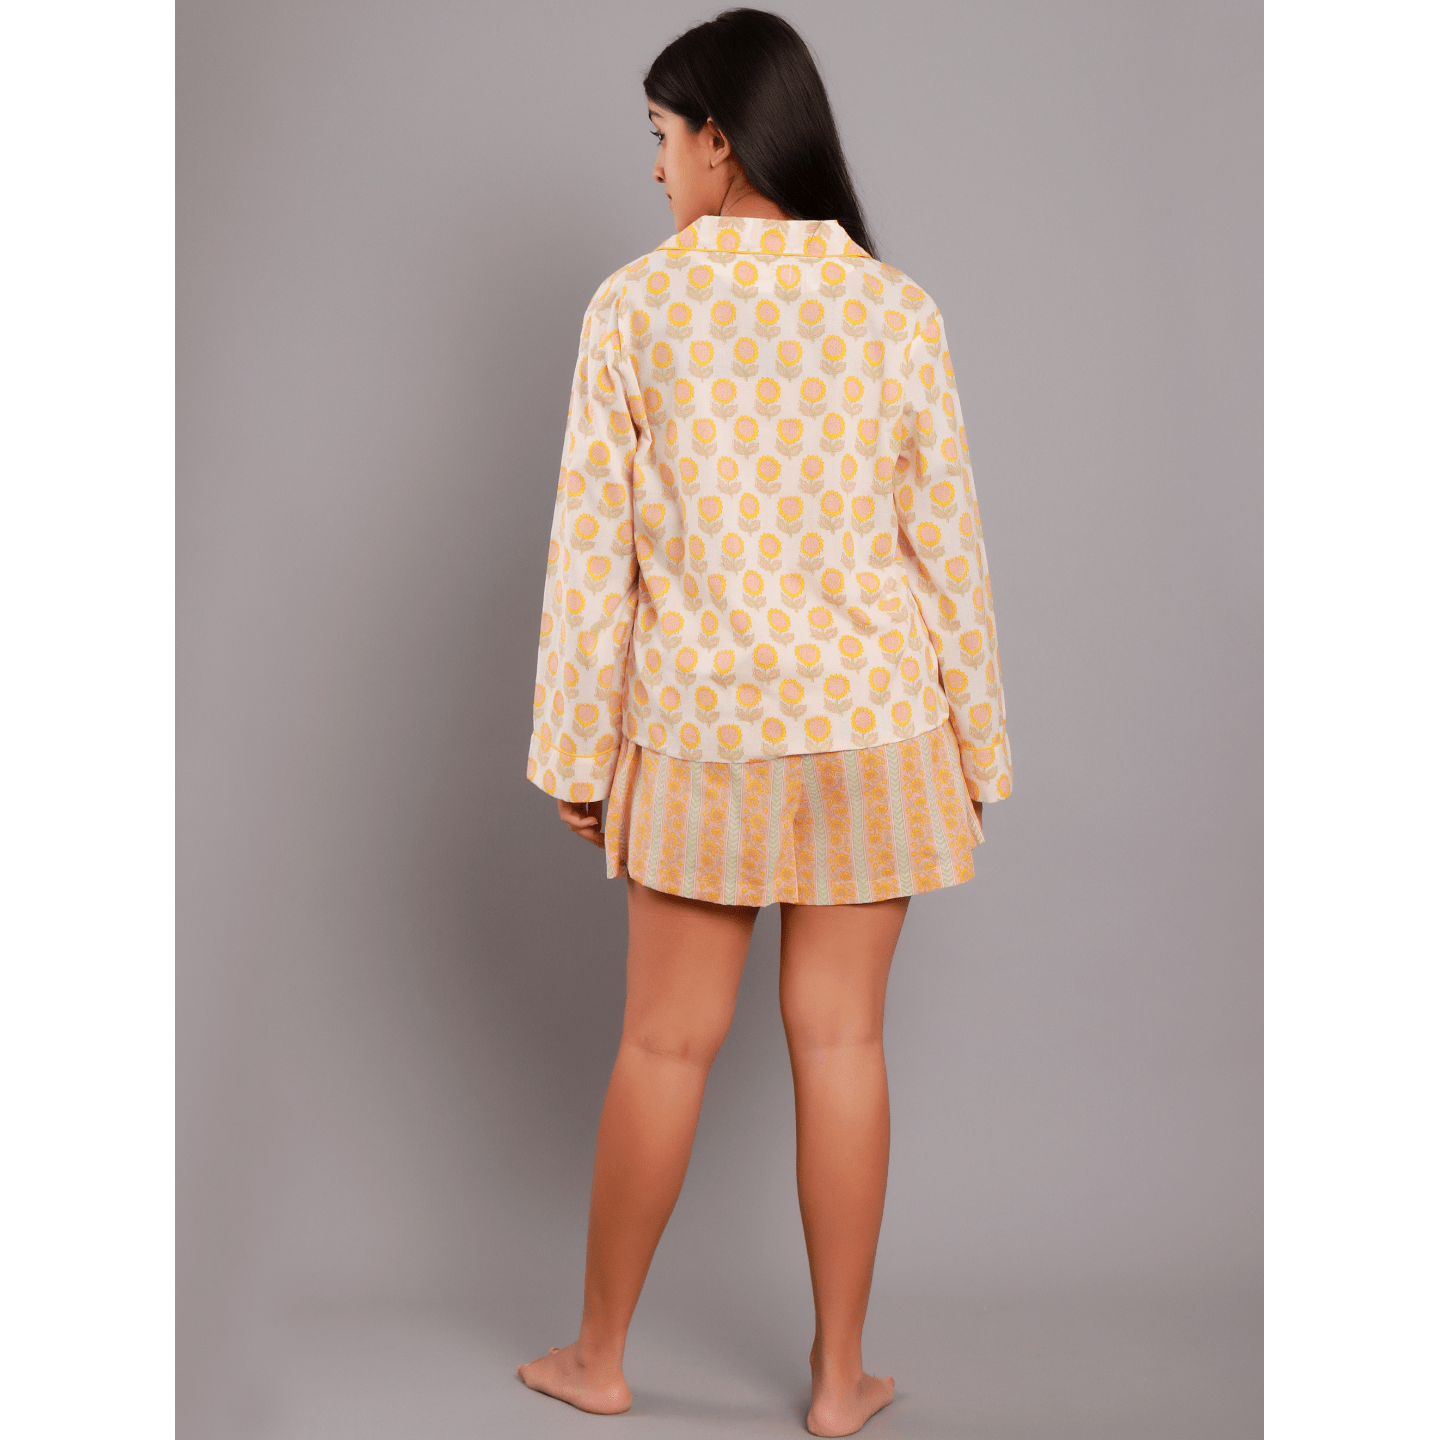 Women nightsuit shorts sunflower yellow